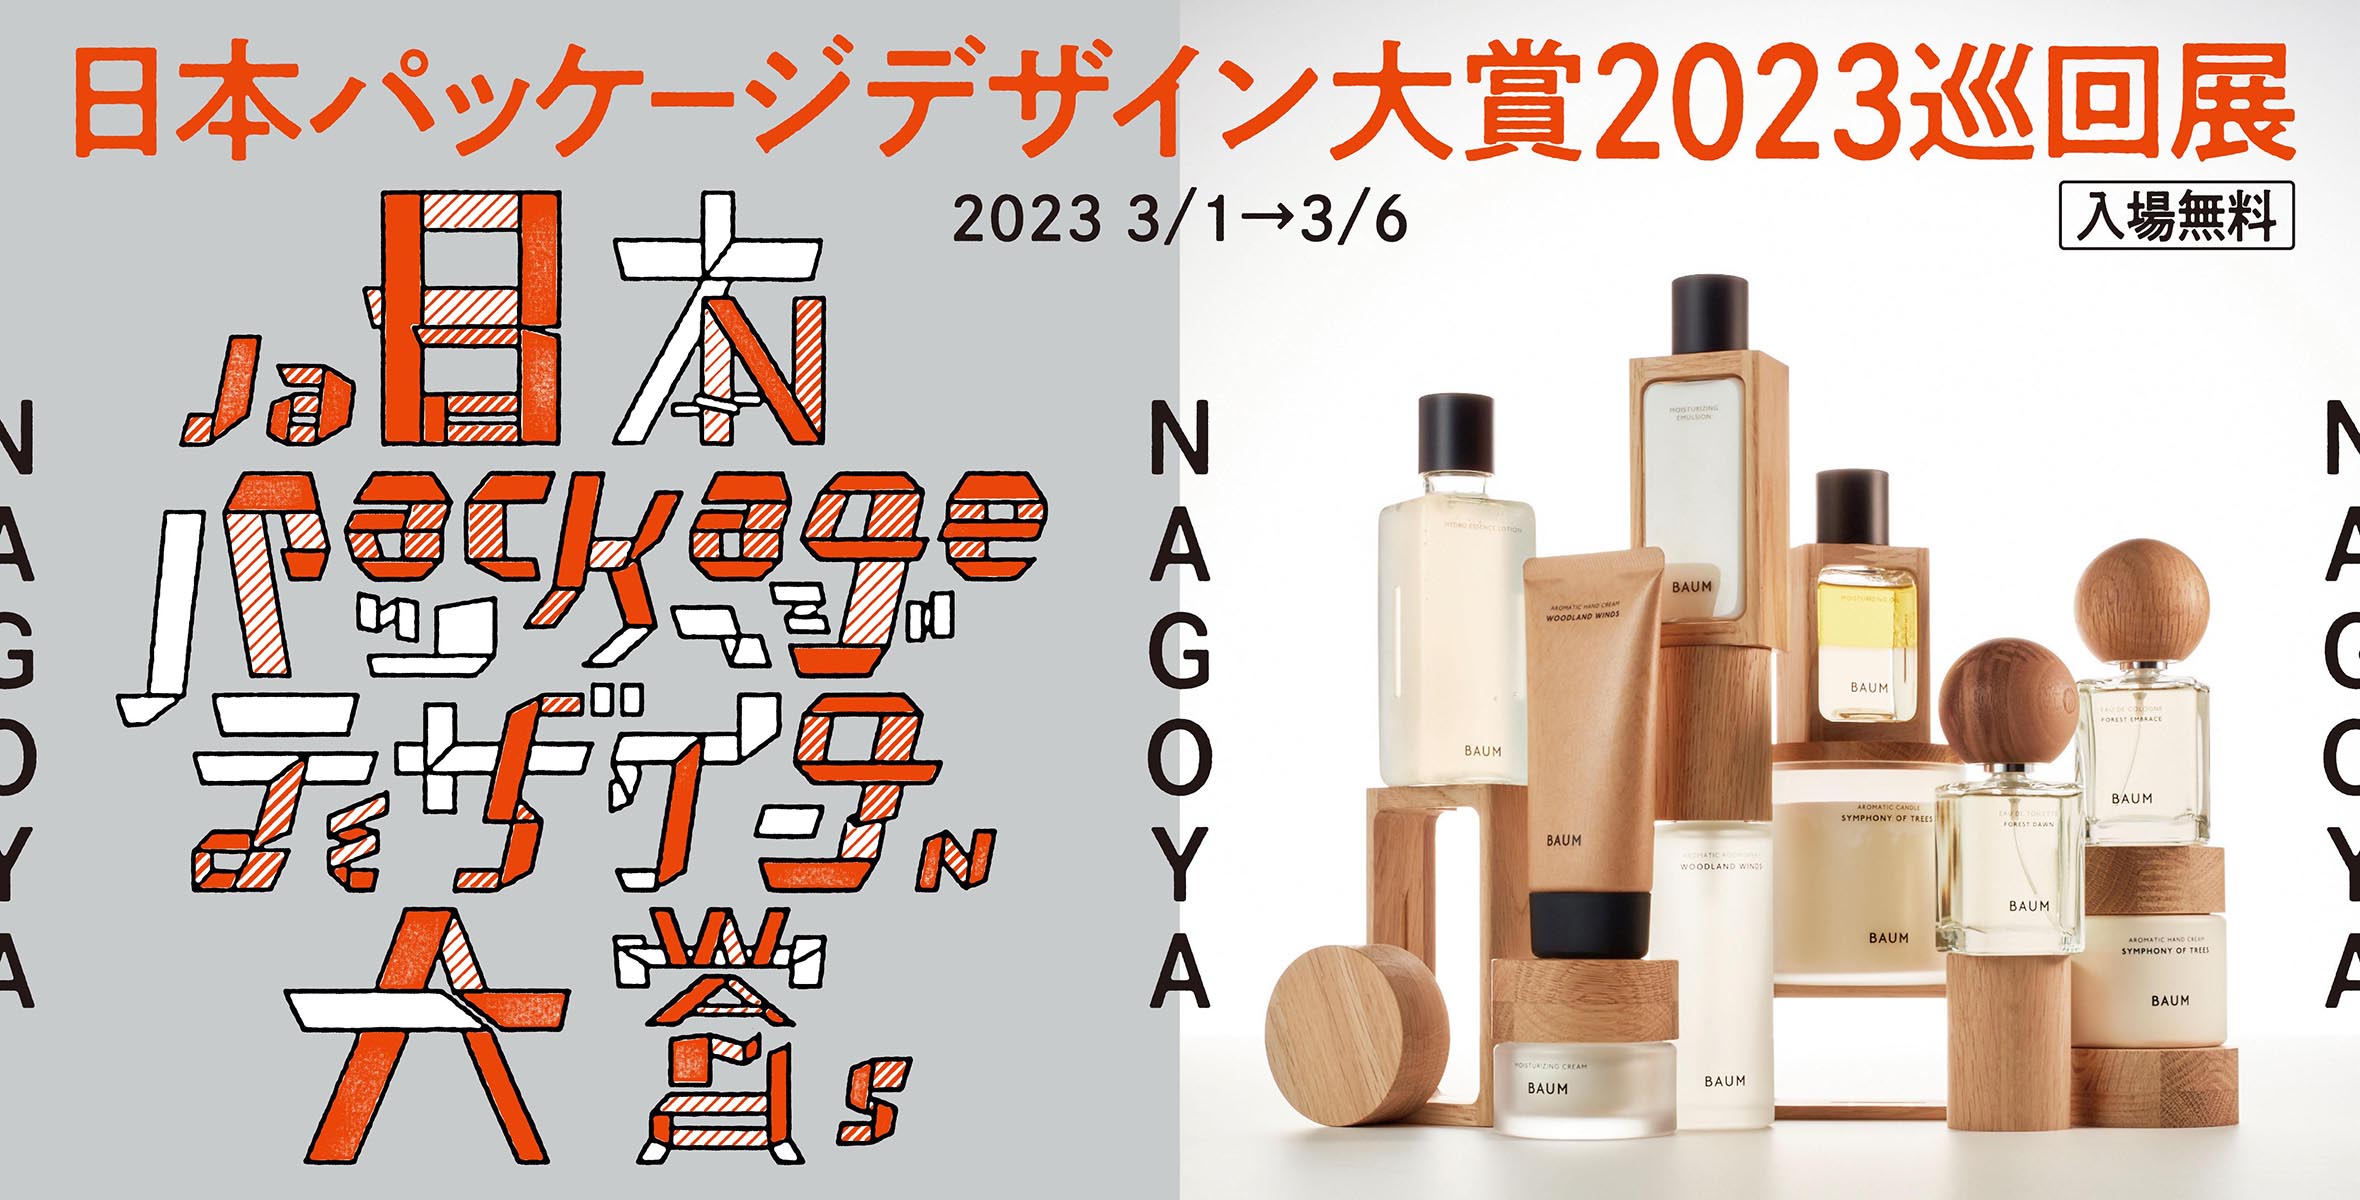 日本パッケージデザイン大賞2023巡回展 in NAGOYAのイメージ